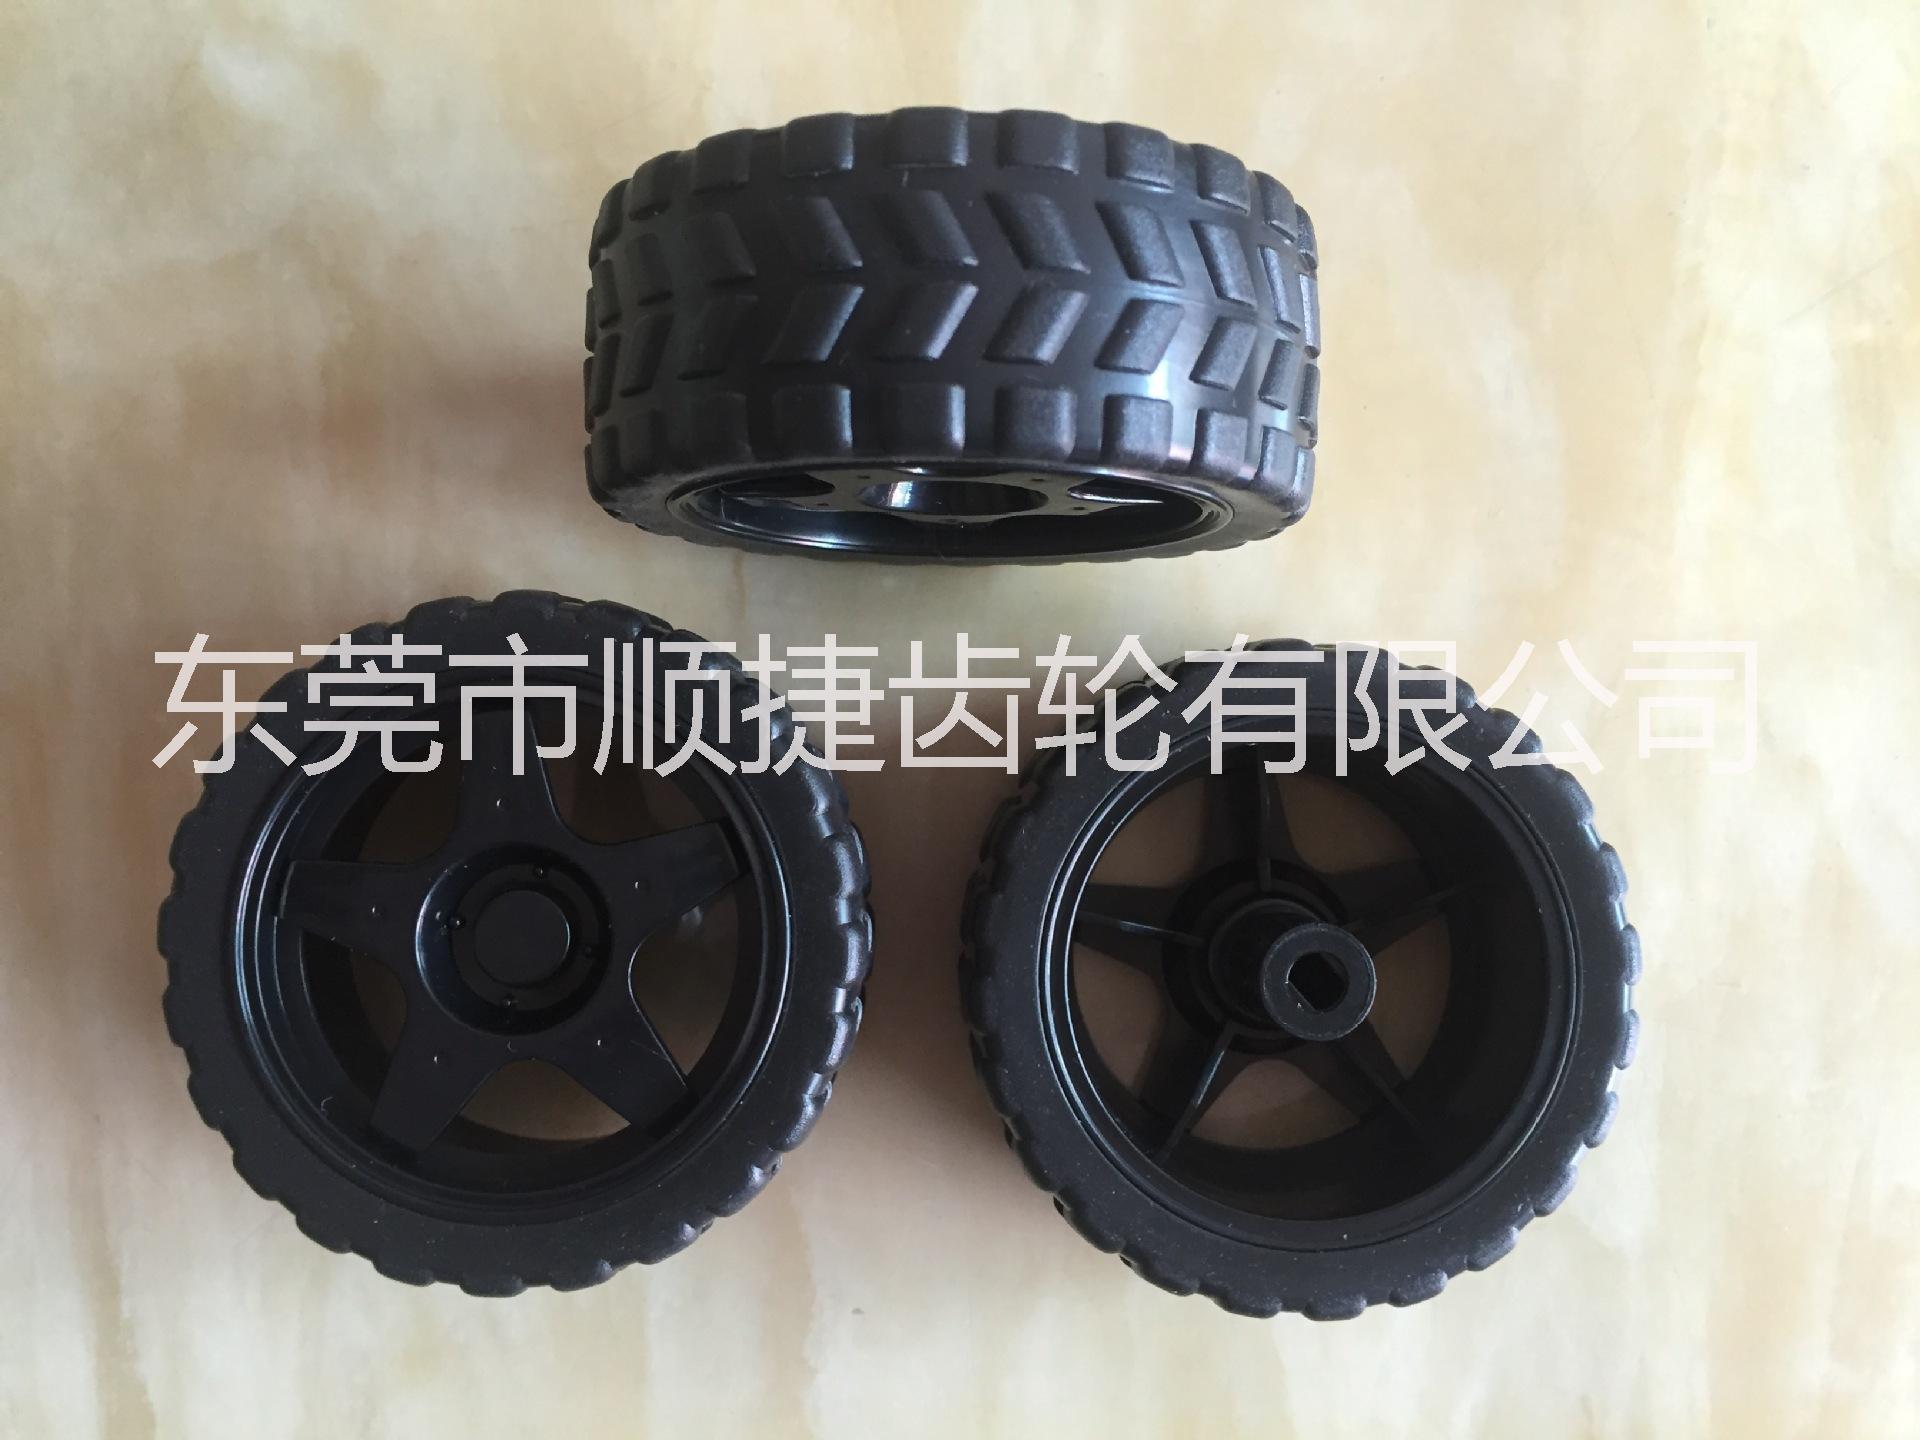 东莞市轮胎厂家玩具轮胎 橡胶环保轮胎 DIY轮胎 智能轮胎 机器人轮胎